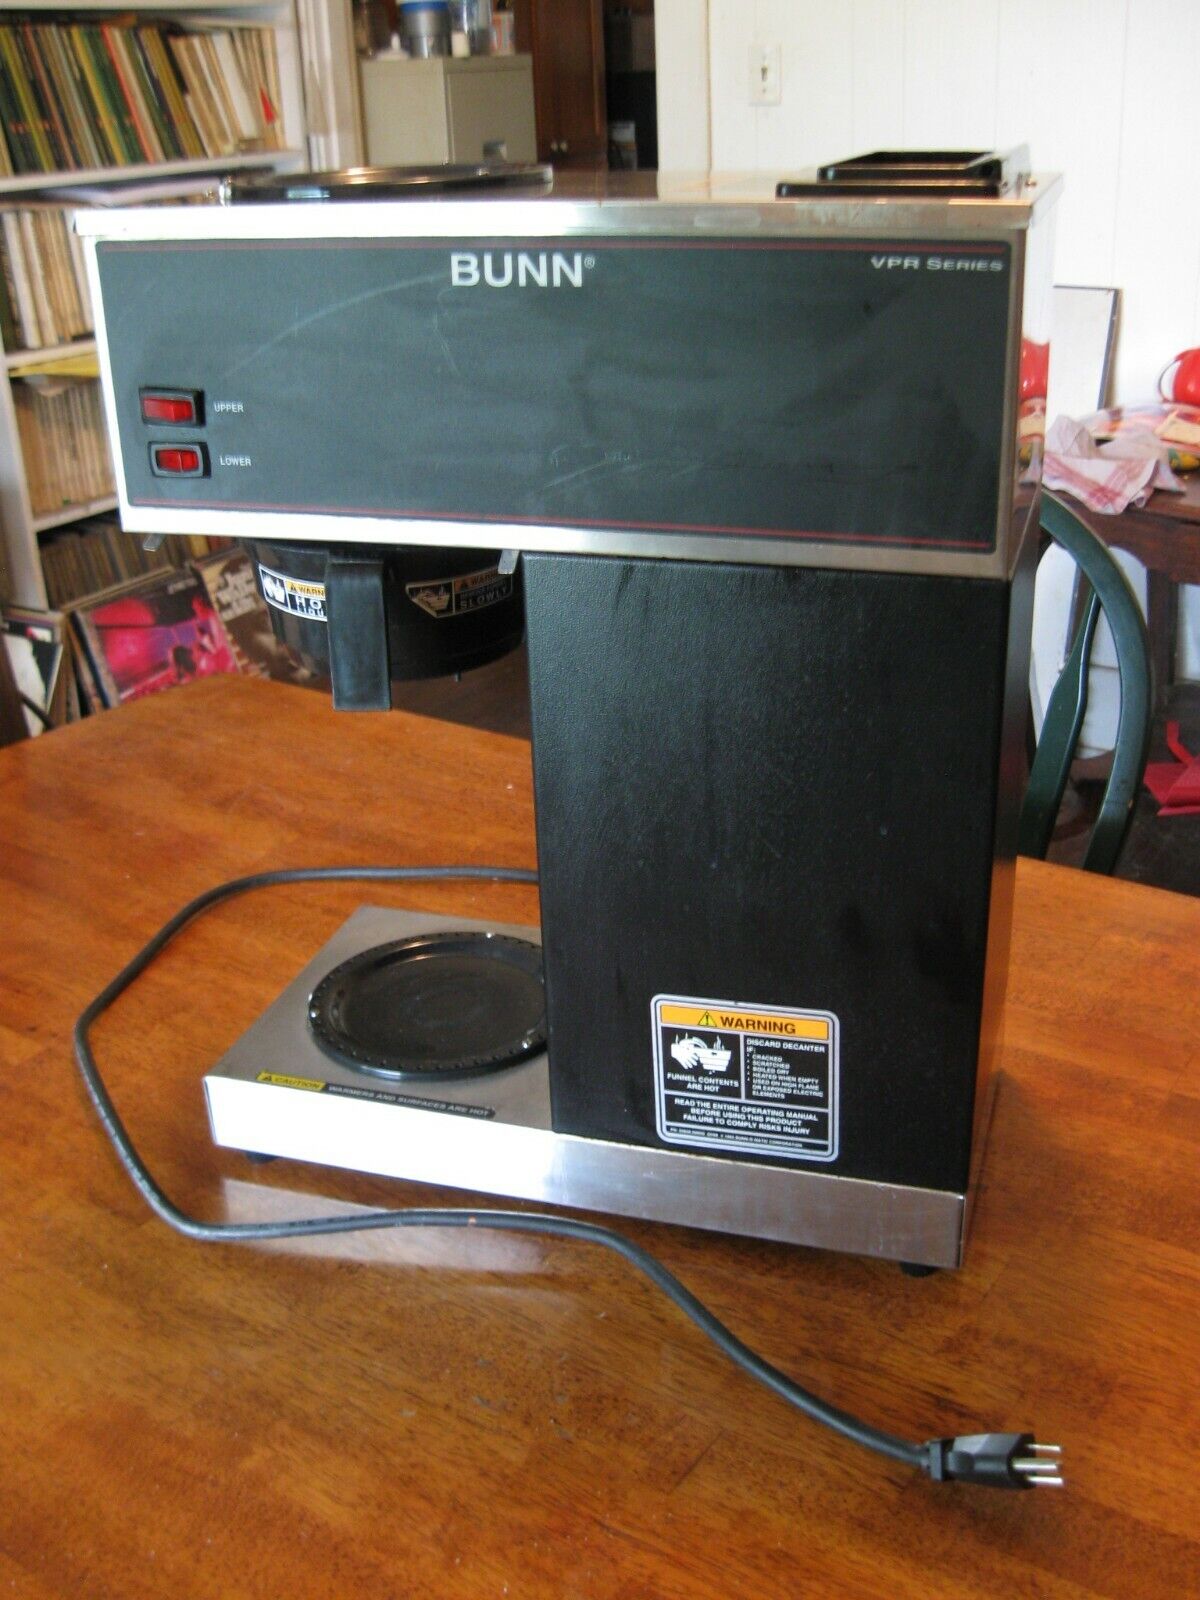 Bunn VPR coffee maker